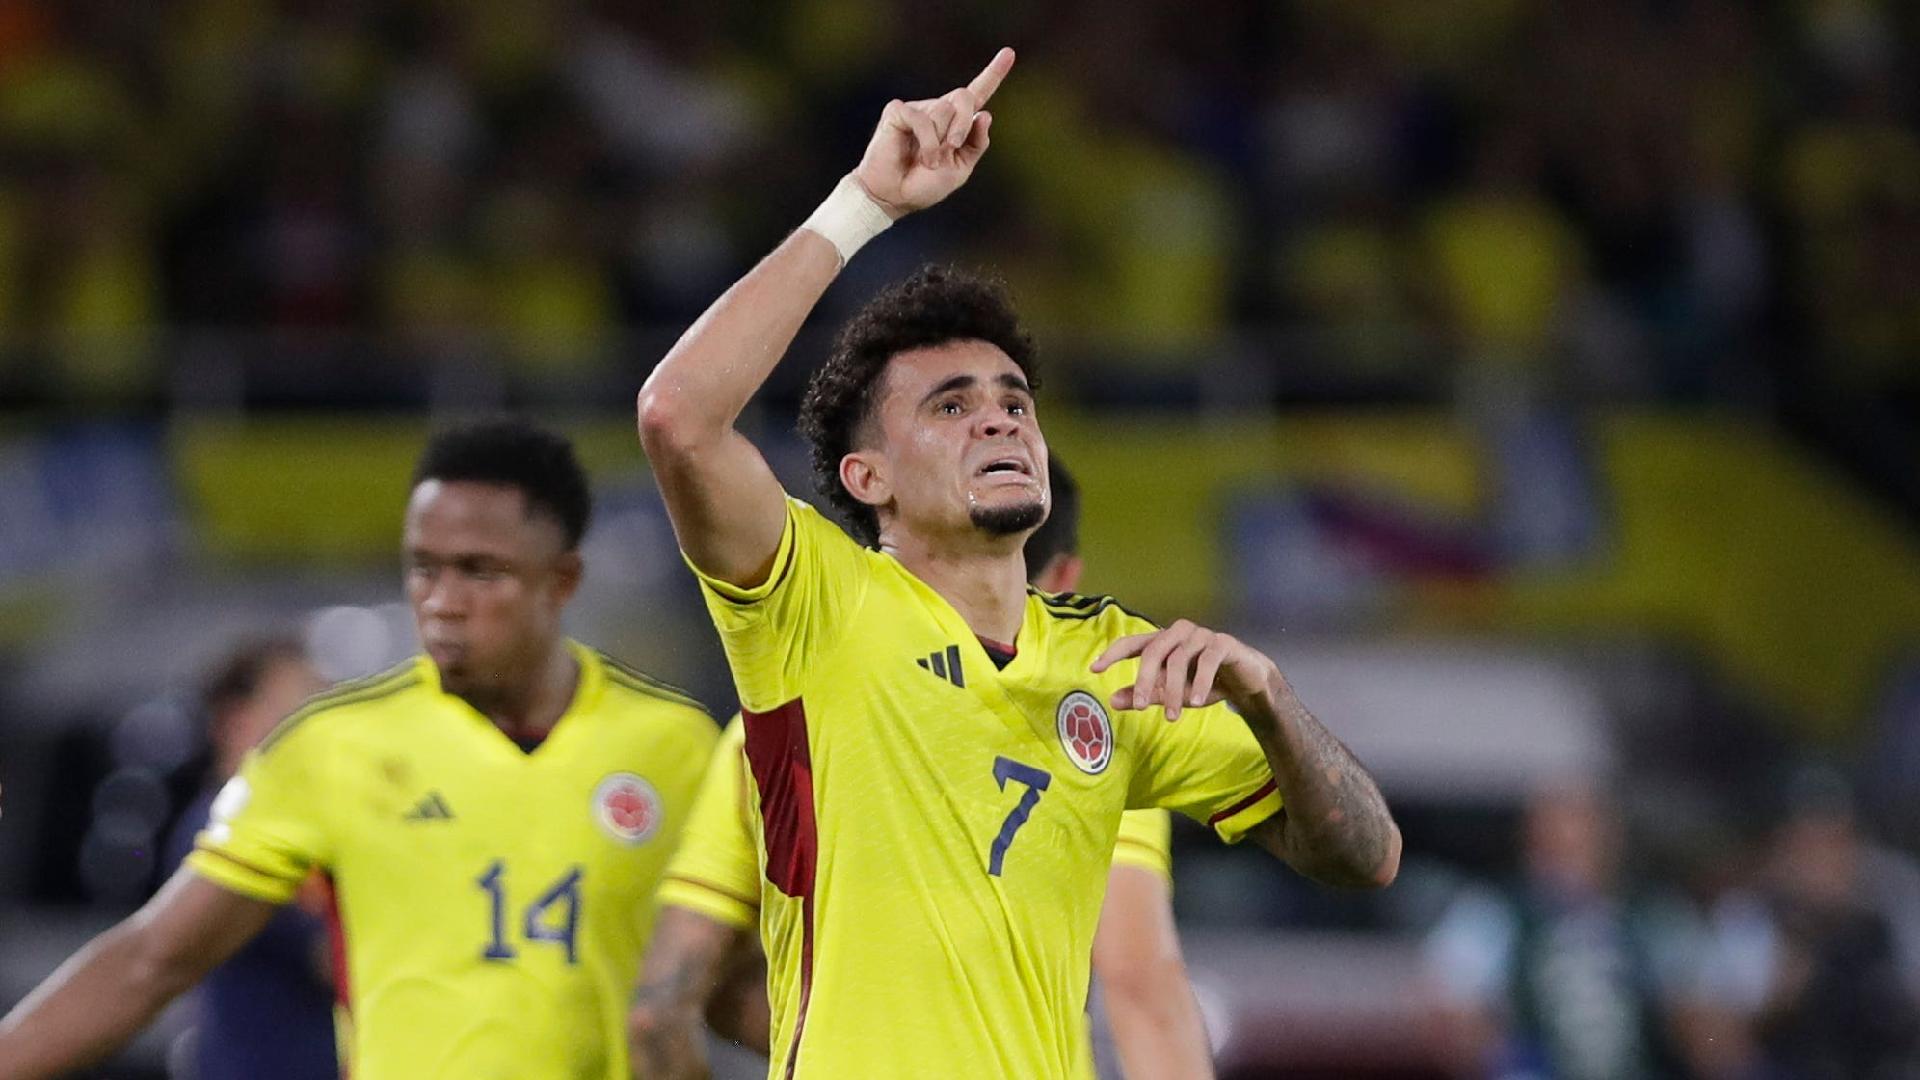 Colombia-Costa Rica, il pronostico di Copa America: Streaming Gratis e probabili formazioni